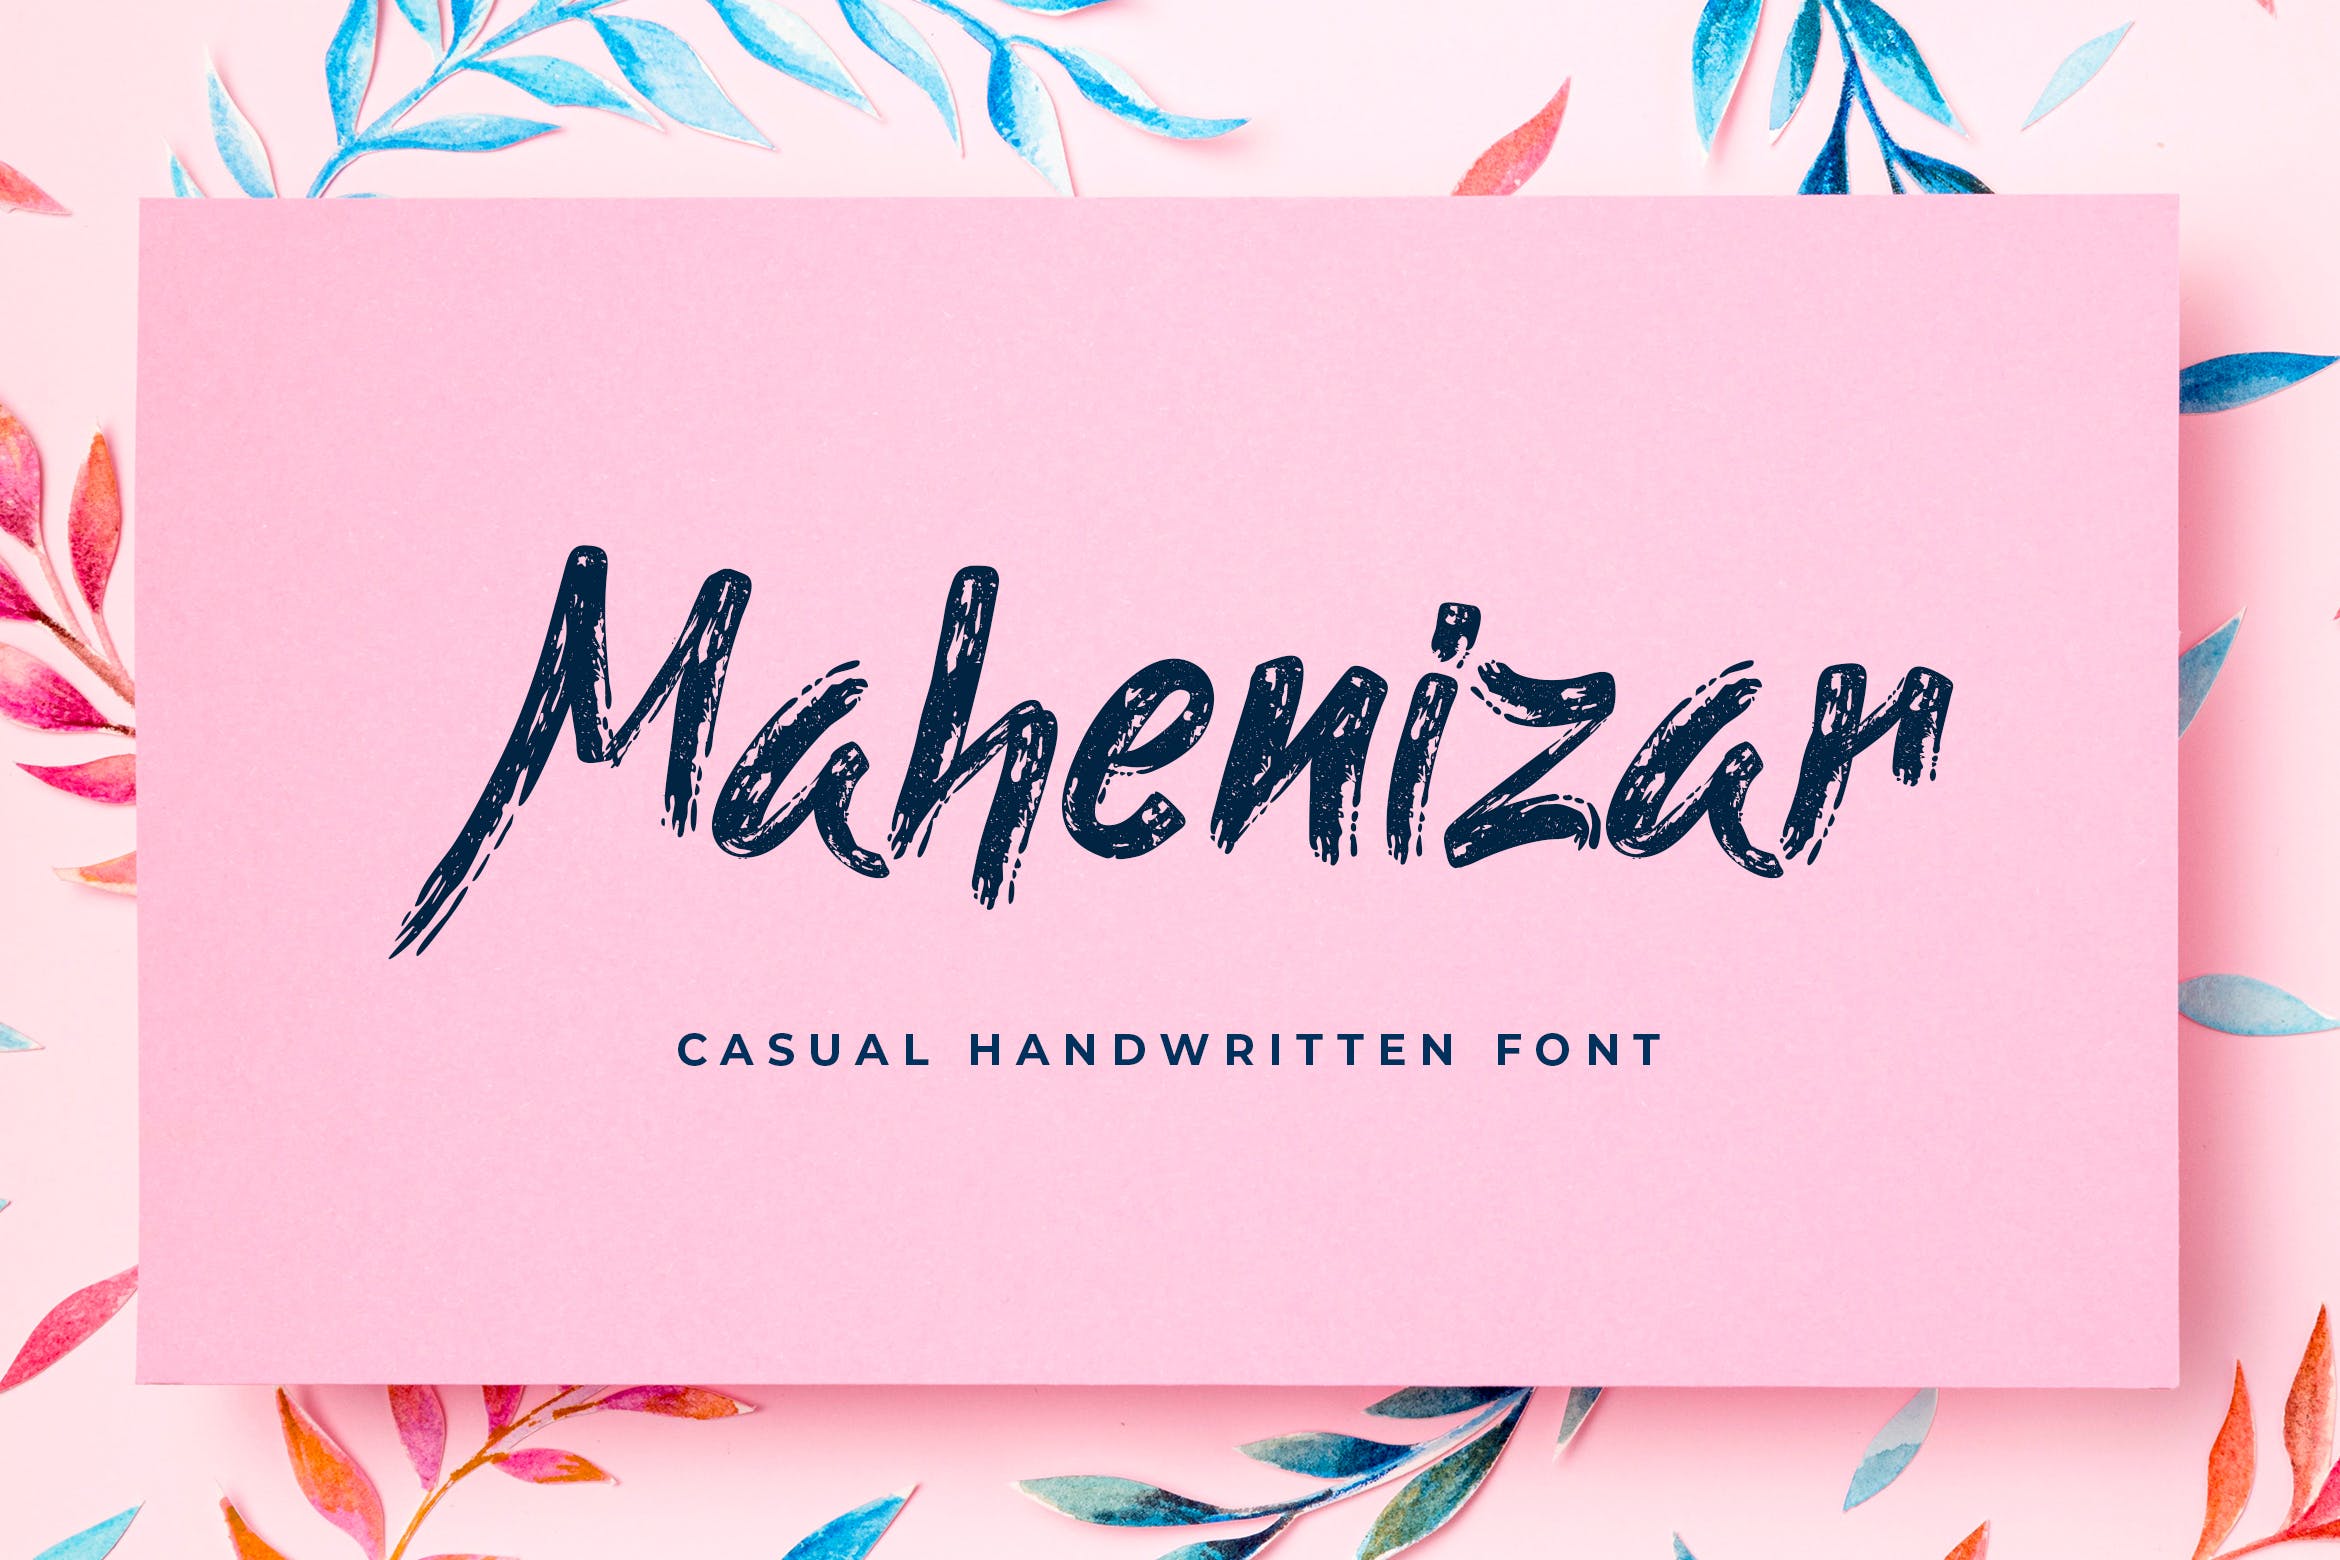 英文笔刷风格手写字体 Mahenizar Brush Handwritten Font 设计素材 第1张